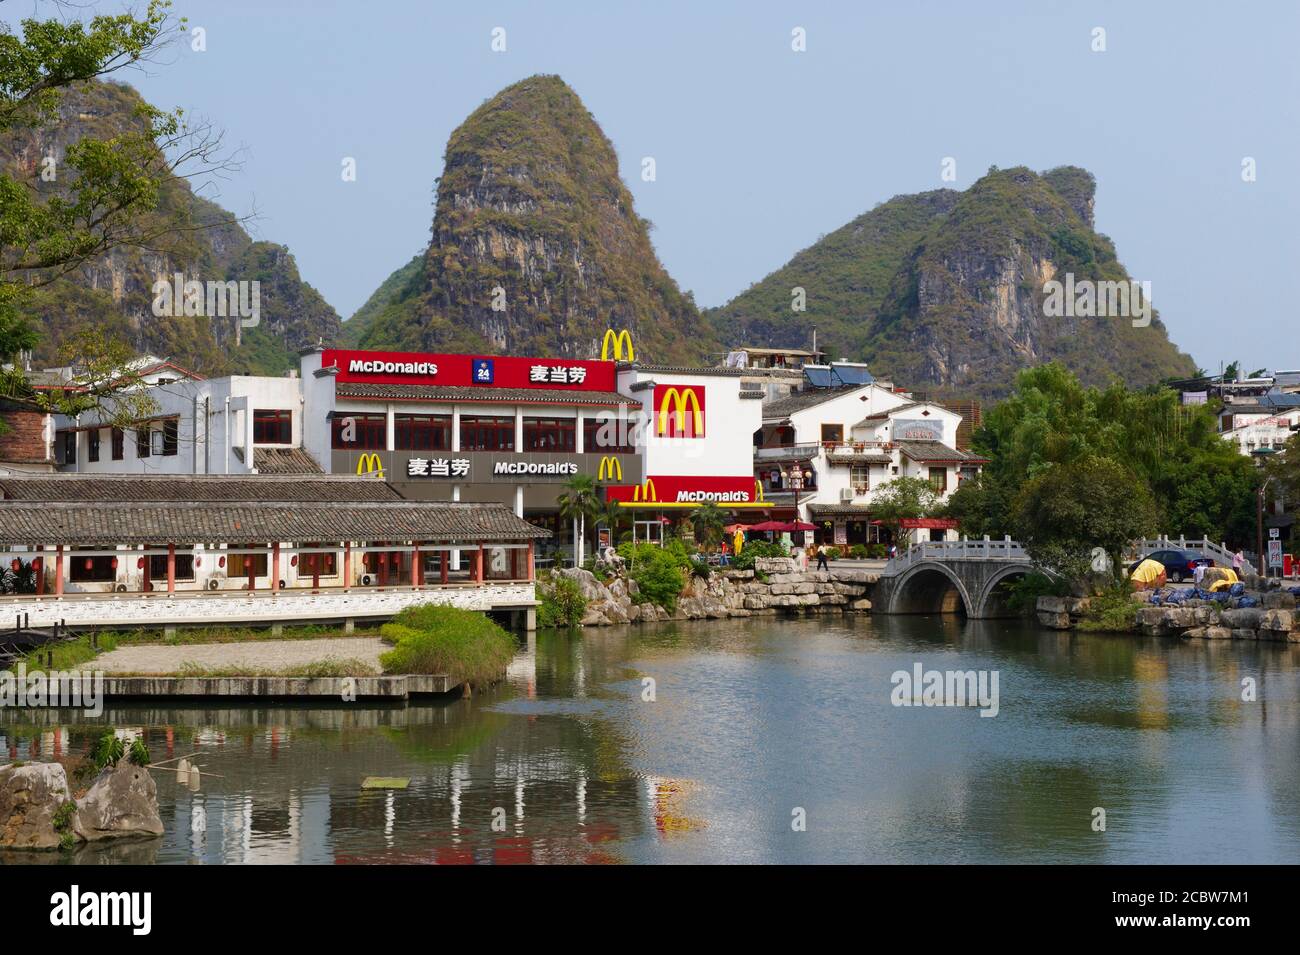 China, Guangxi province, Guilin area, Mac Donald restaurant in Yangshuo city Stock Photo